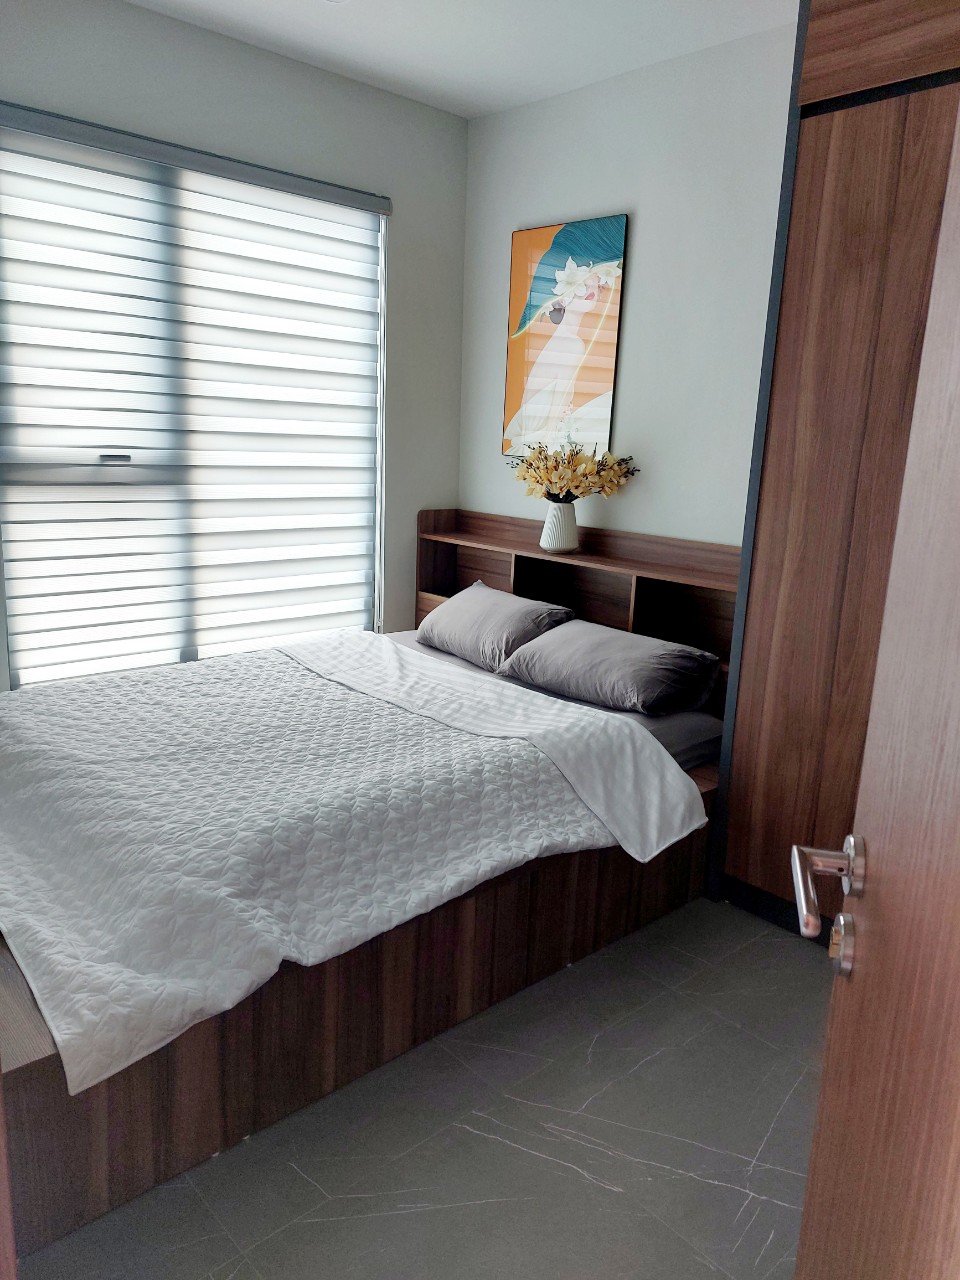 Lotus Apatment cho thuê căn hộ 1 phòng ngủ và 1 phòng khách diện tích 41m2 tại Trúc Bạch, Ba Đình, - Ảnh 1